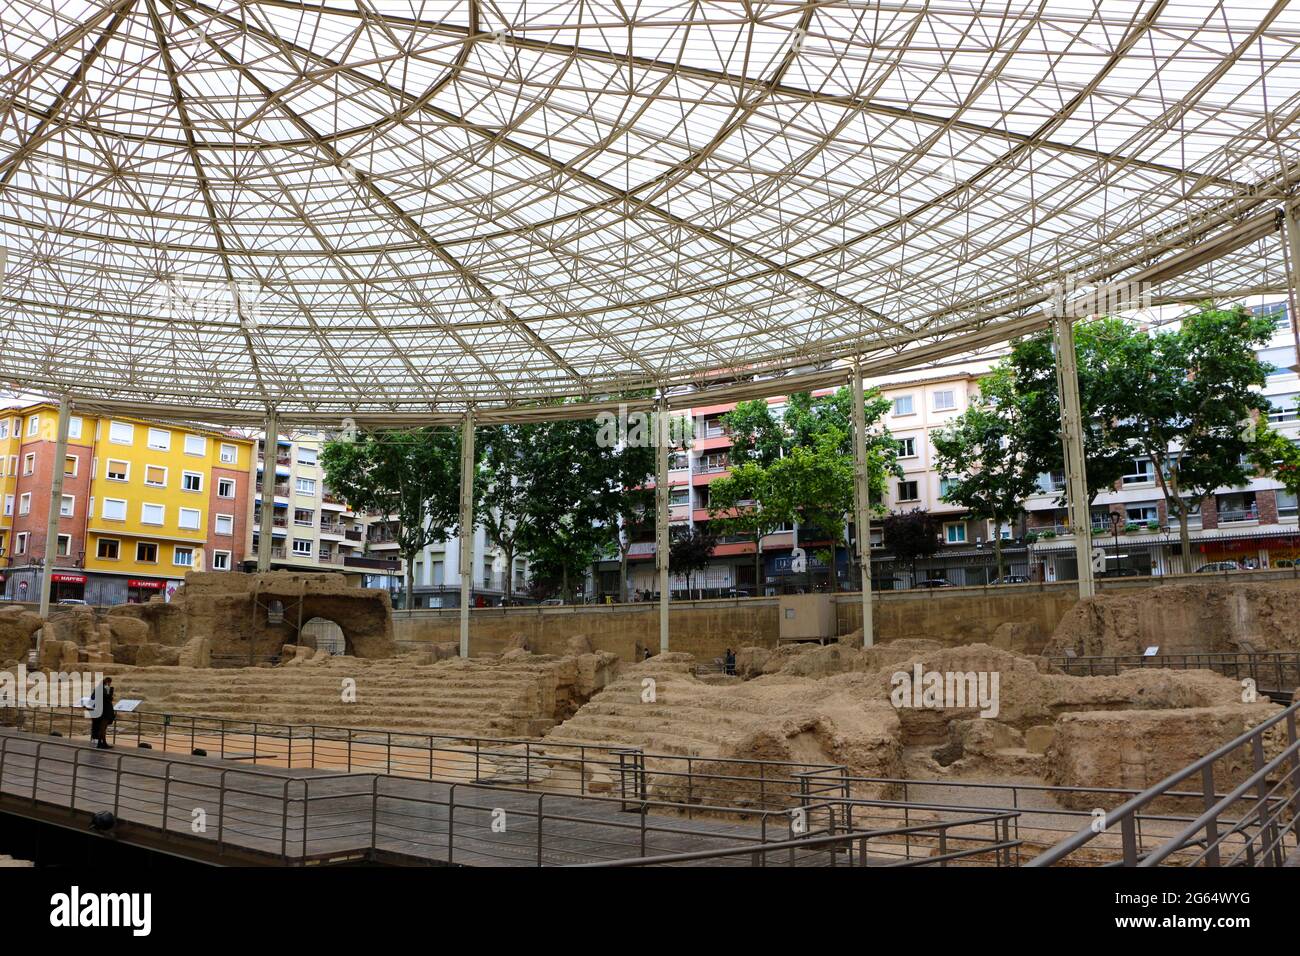 Römisches Theater aus dem 1st. Jahrhundert n. Chr., 1973 ausgegraben und heute mit einem Dach und einem Teil des Cesaraugusta Theatre Museum Zaragoza Aragon Spanien geschützt Stockfoto